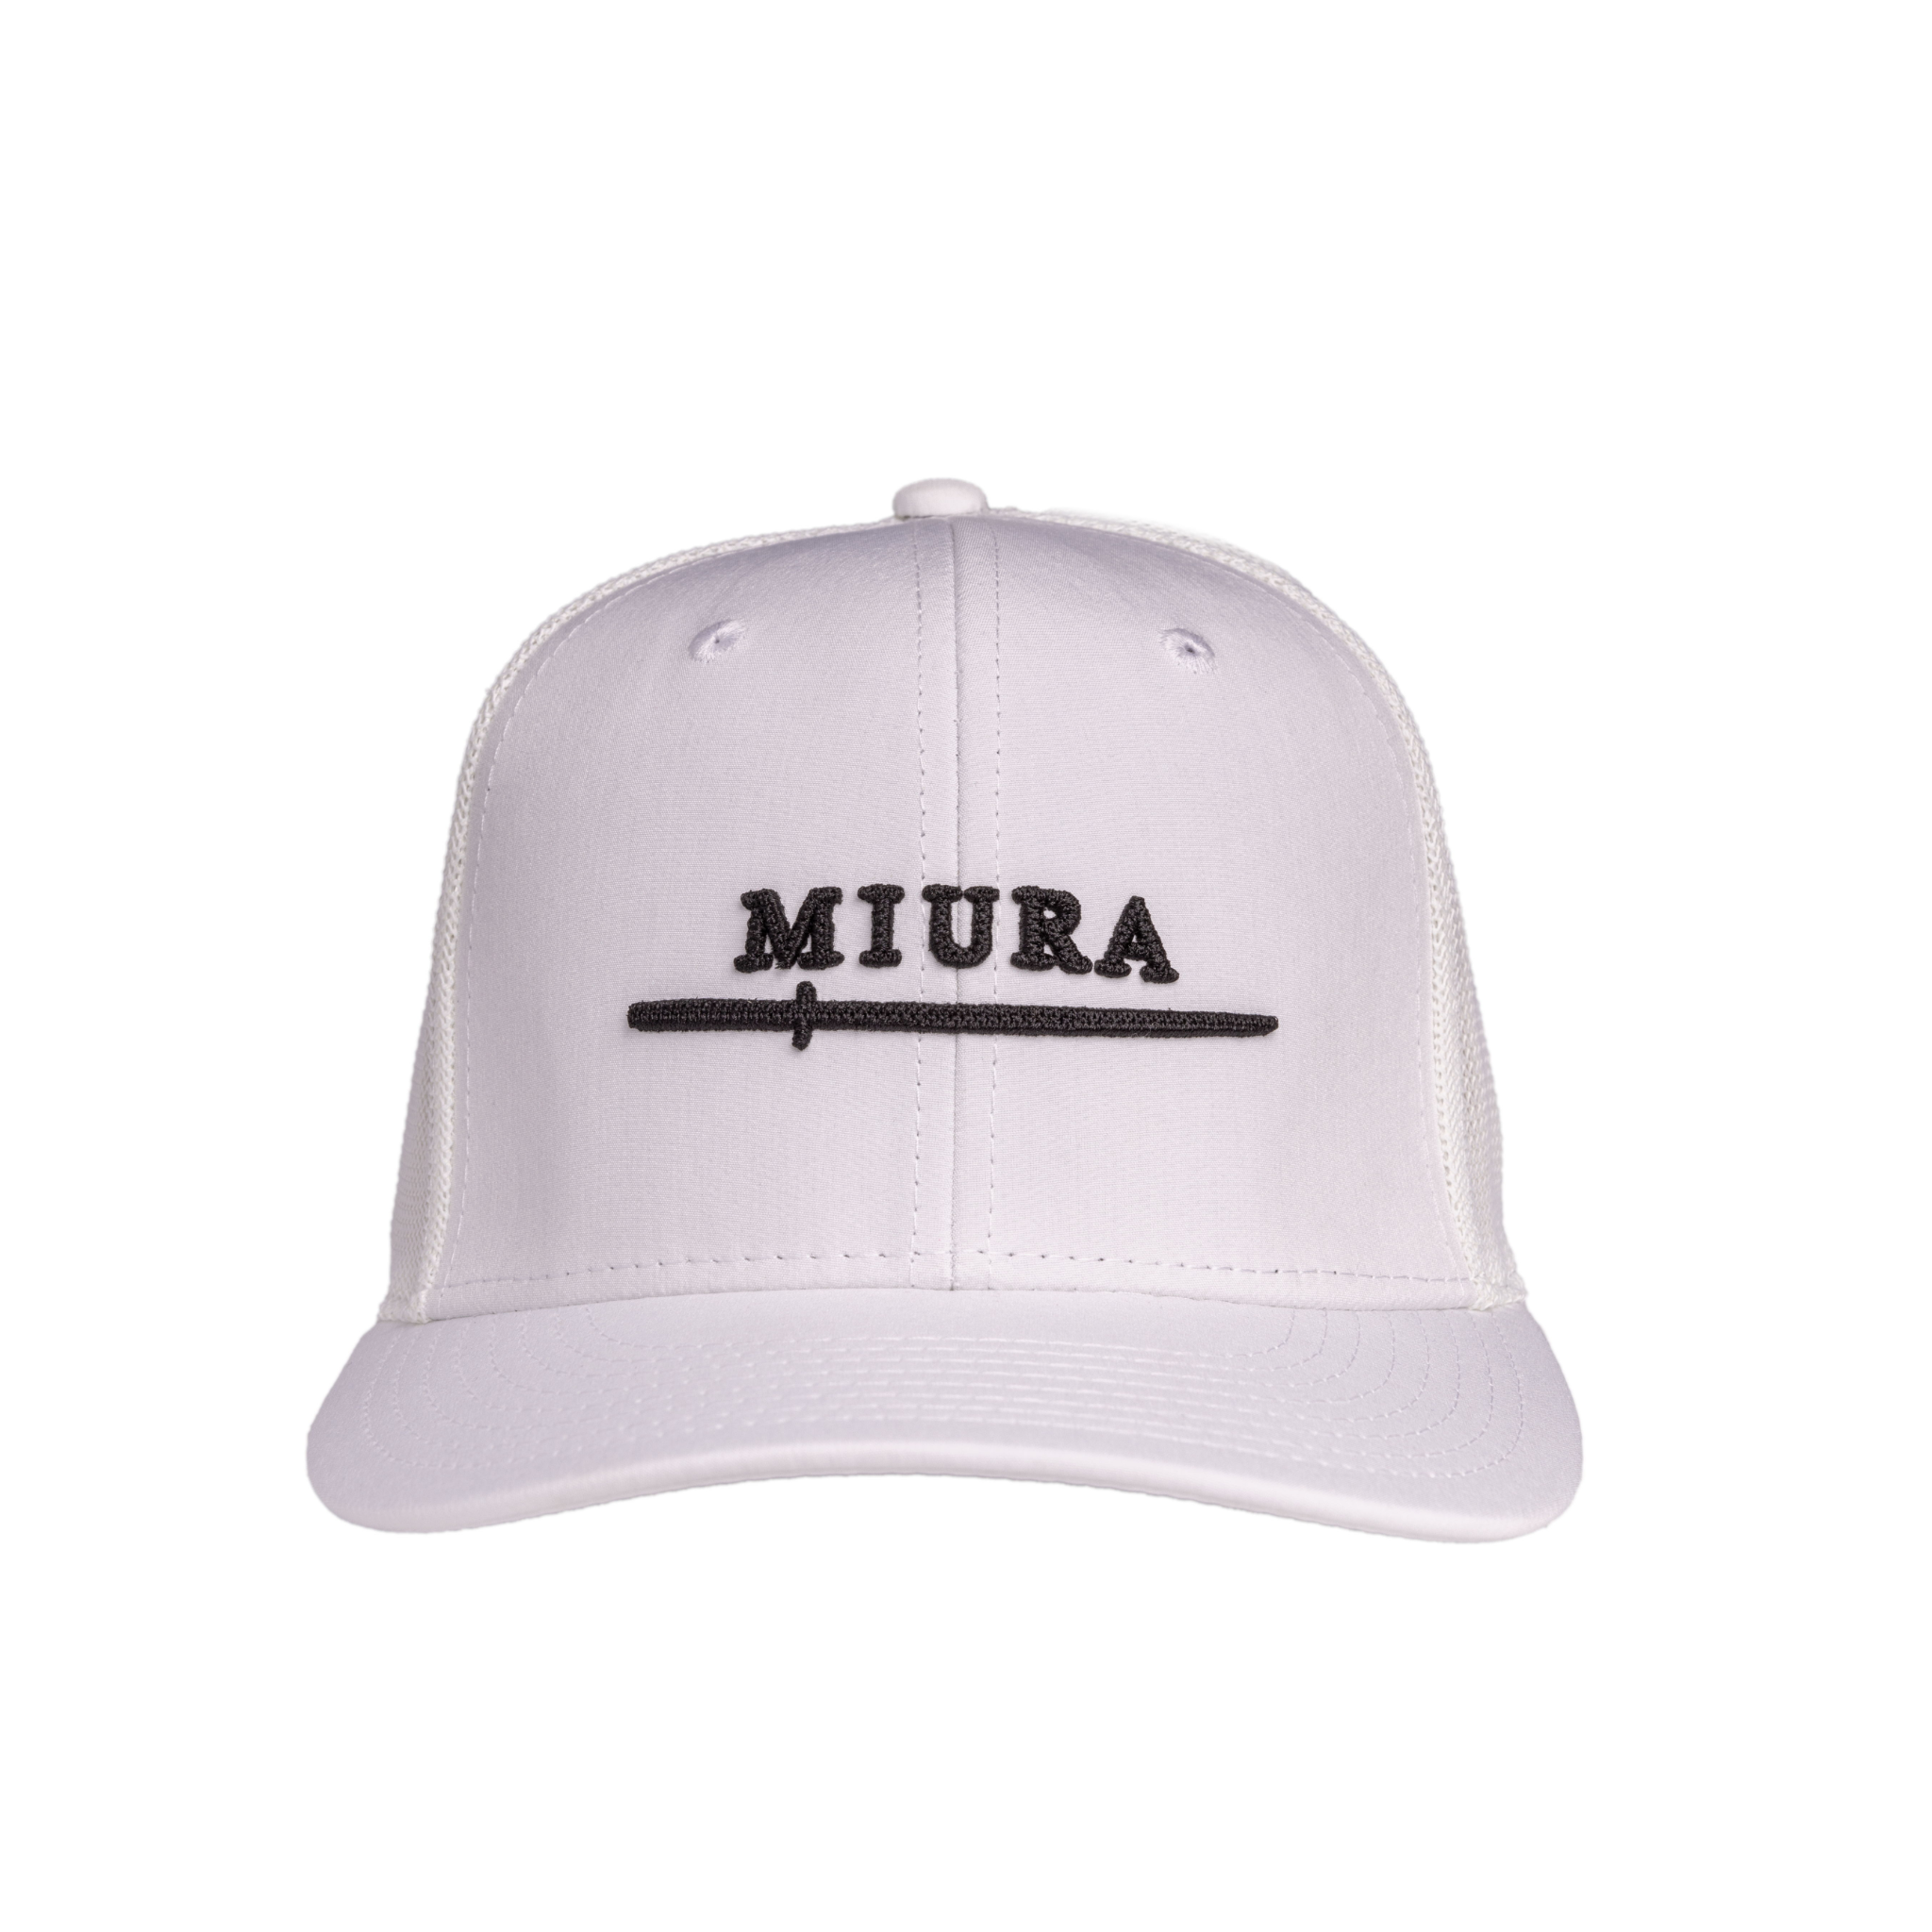 Miura Blade High Crown Trucker